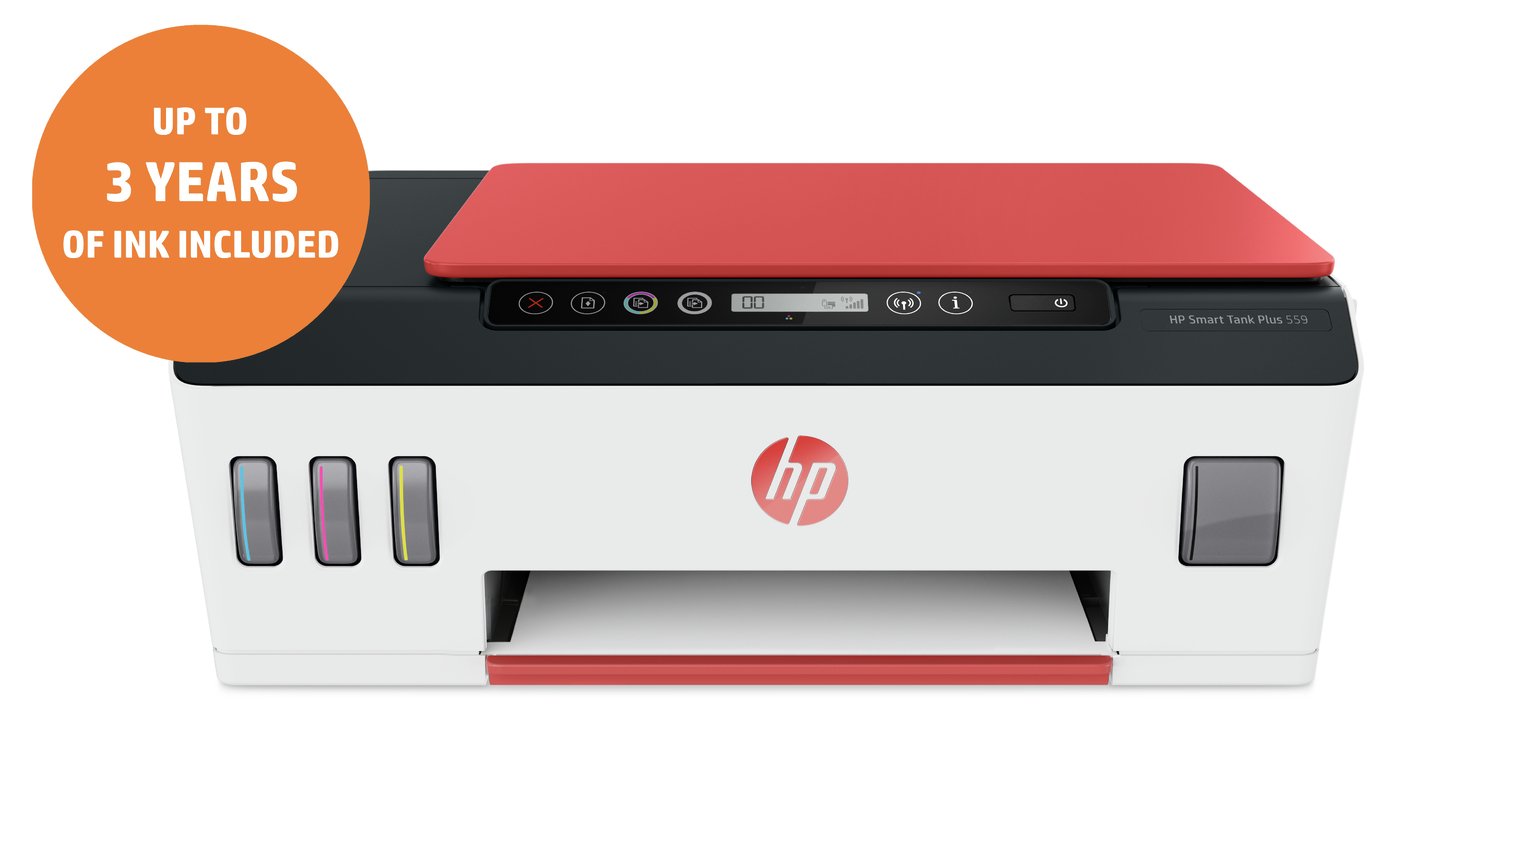 HP SmartTank 559 Wireless Inkjet Printer Review